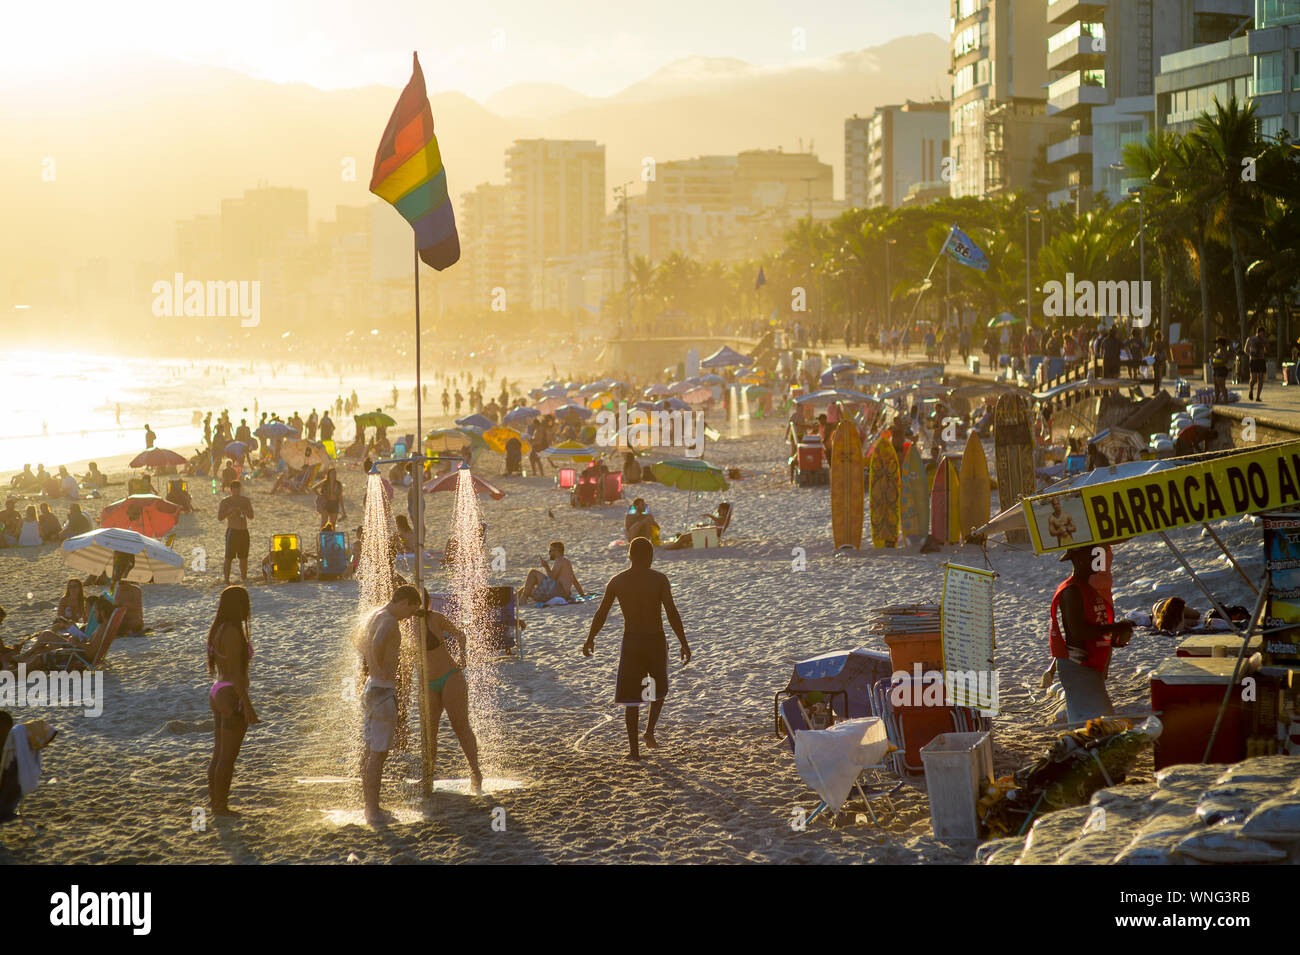 RIO DE JANEIRO - le 14 février 2018 : Amateurs de douche sous une gay pride drapeau arc-en-ciel au coucher du soleil au-dessus de la plage de Ipanema LGBTQ. Banque D'Images